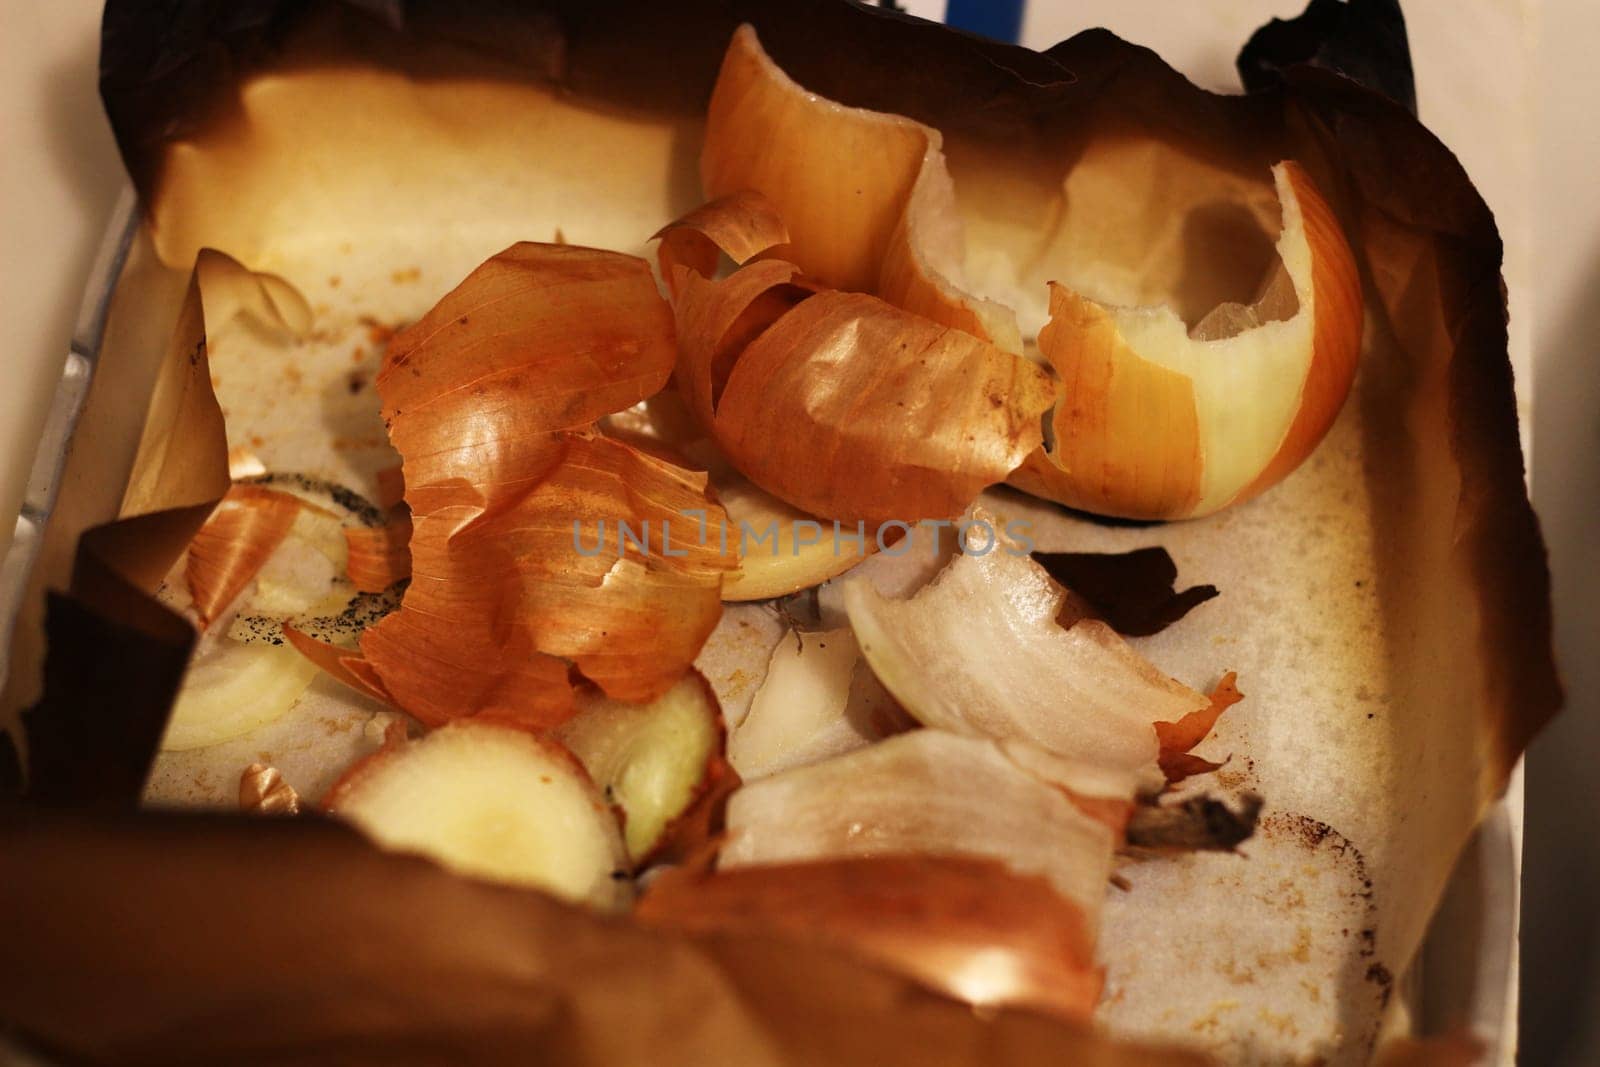 Natural Elegance: Macro View of Onion Peels by DakotaBOldeman